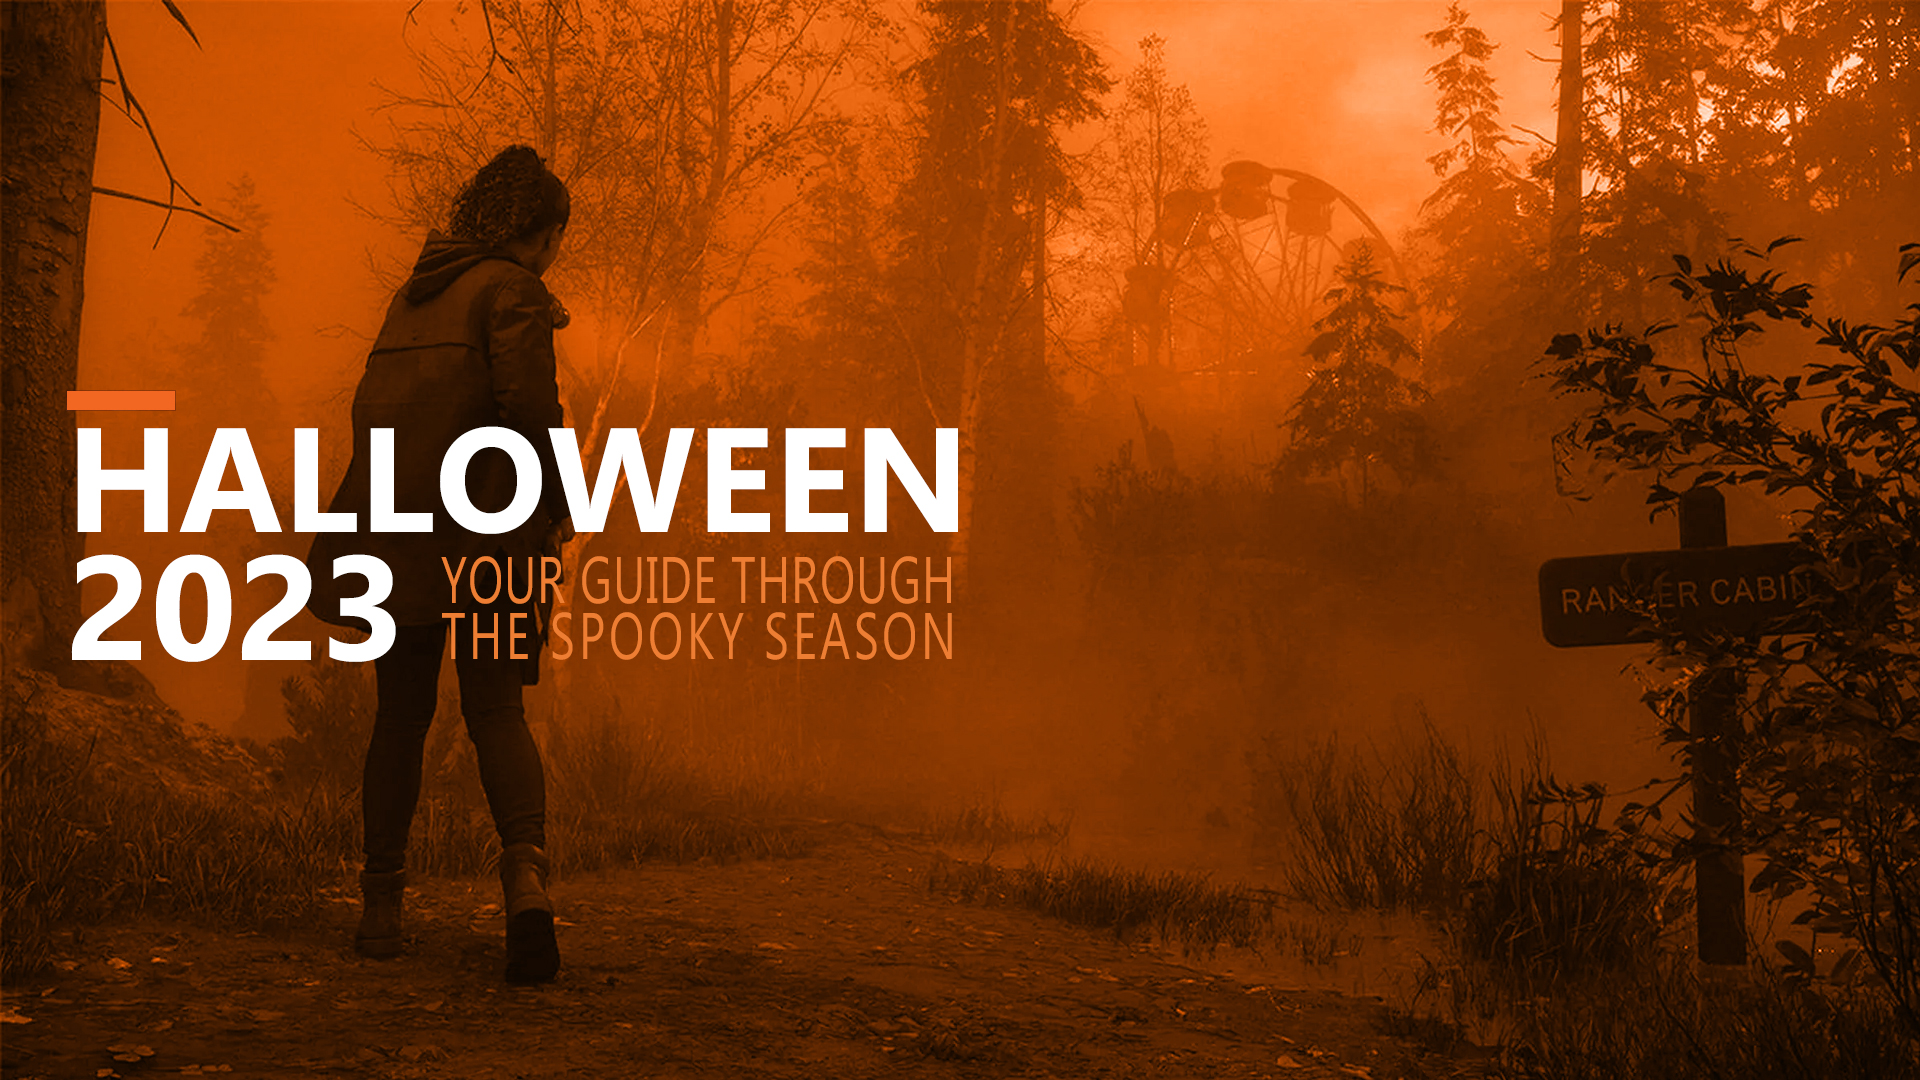 Alan Wake 2 er det beste spillet vi har valgt til Halloween.